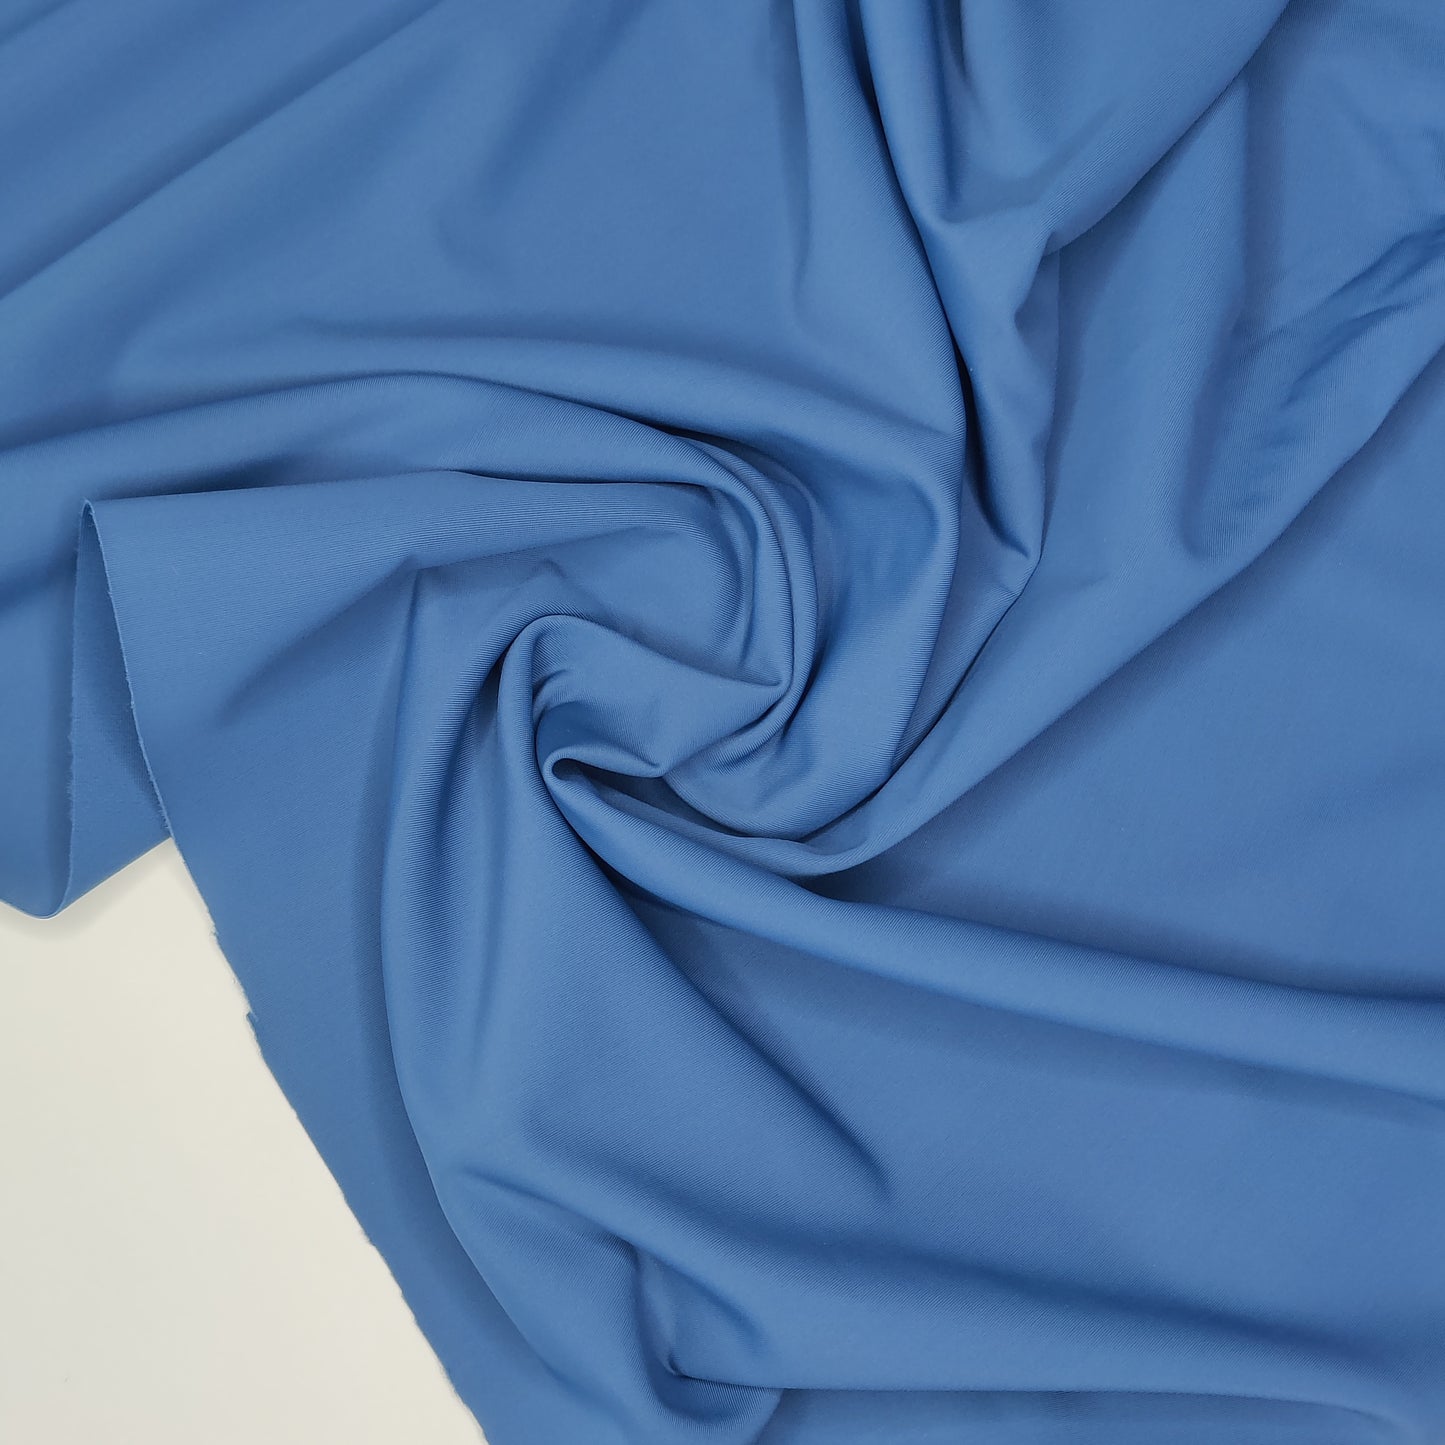 Mikrofaser, bi-elastische Wäscheware. Farbrichtung blue dusk